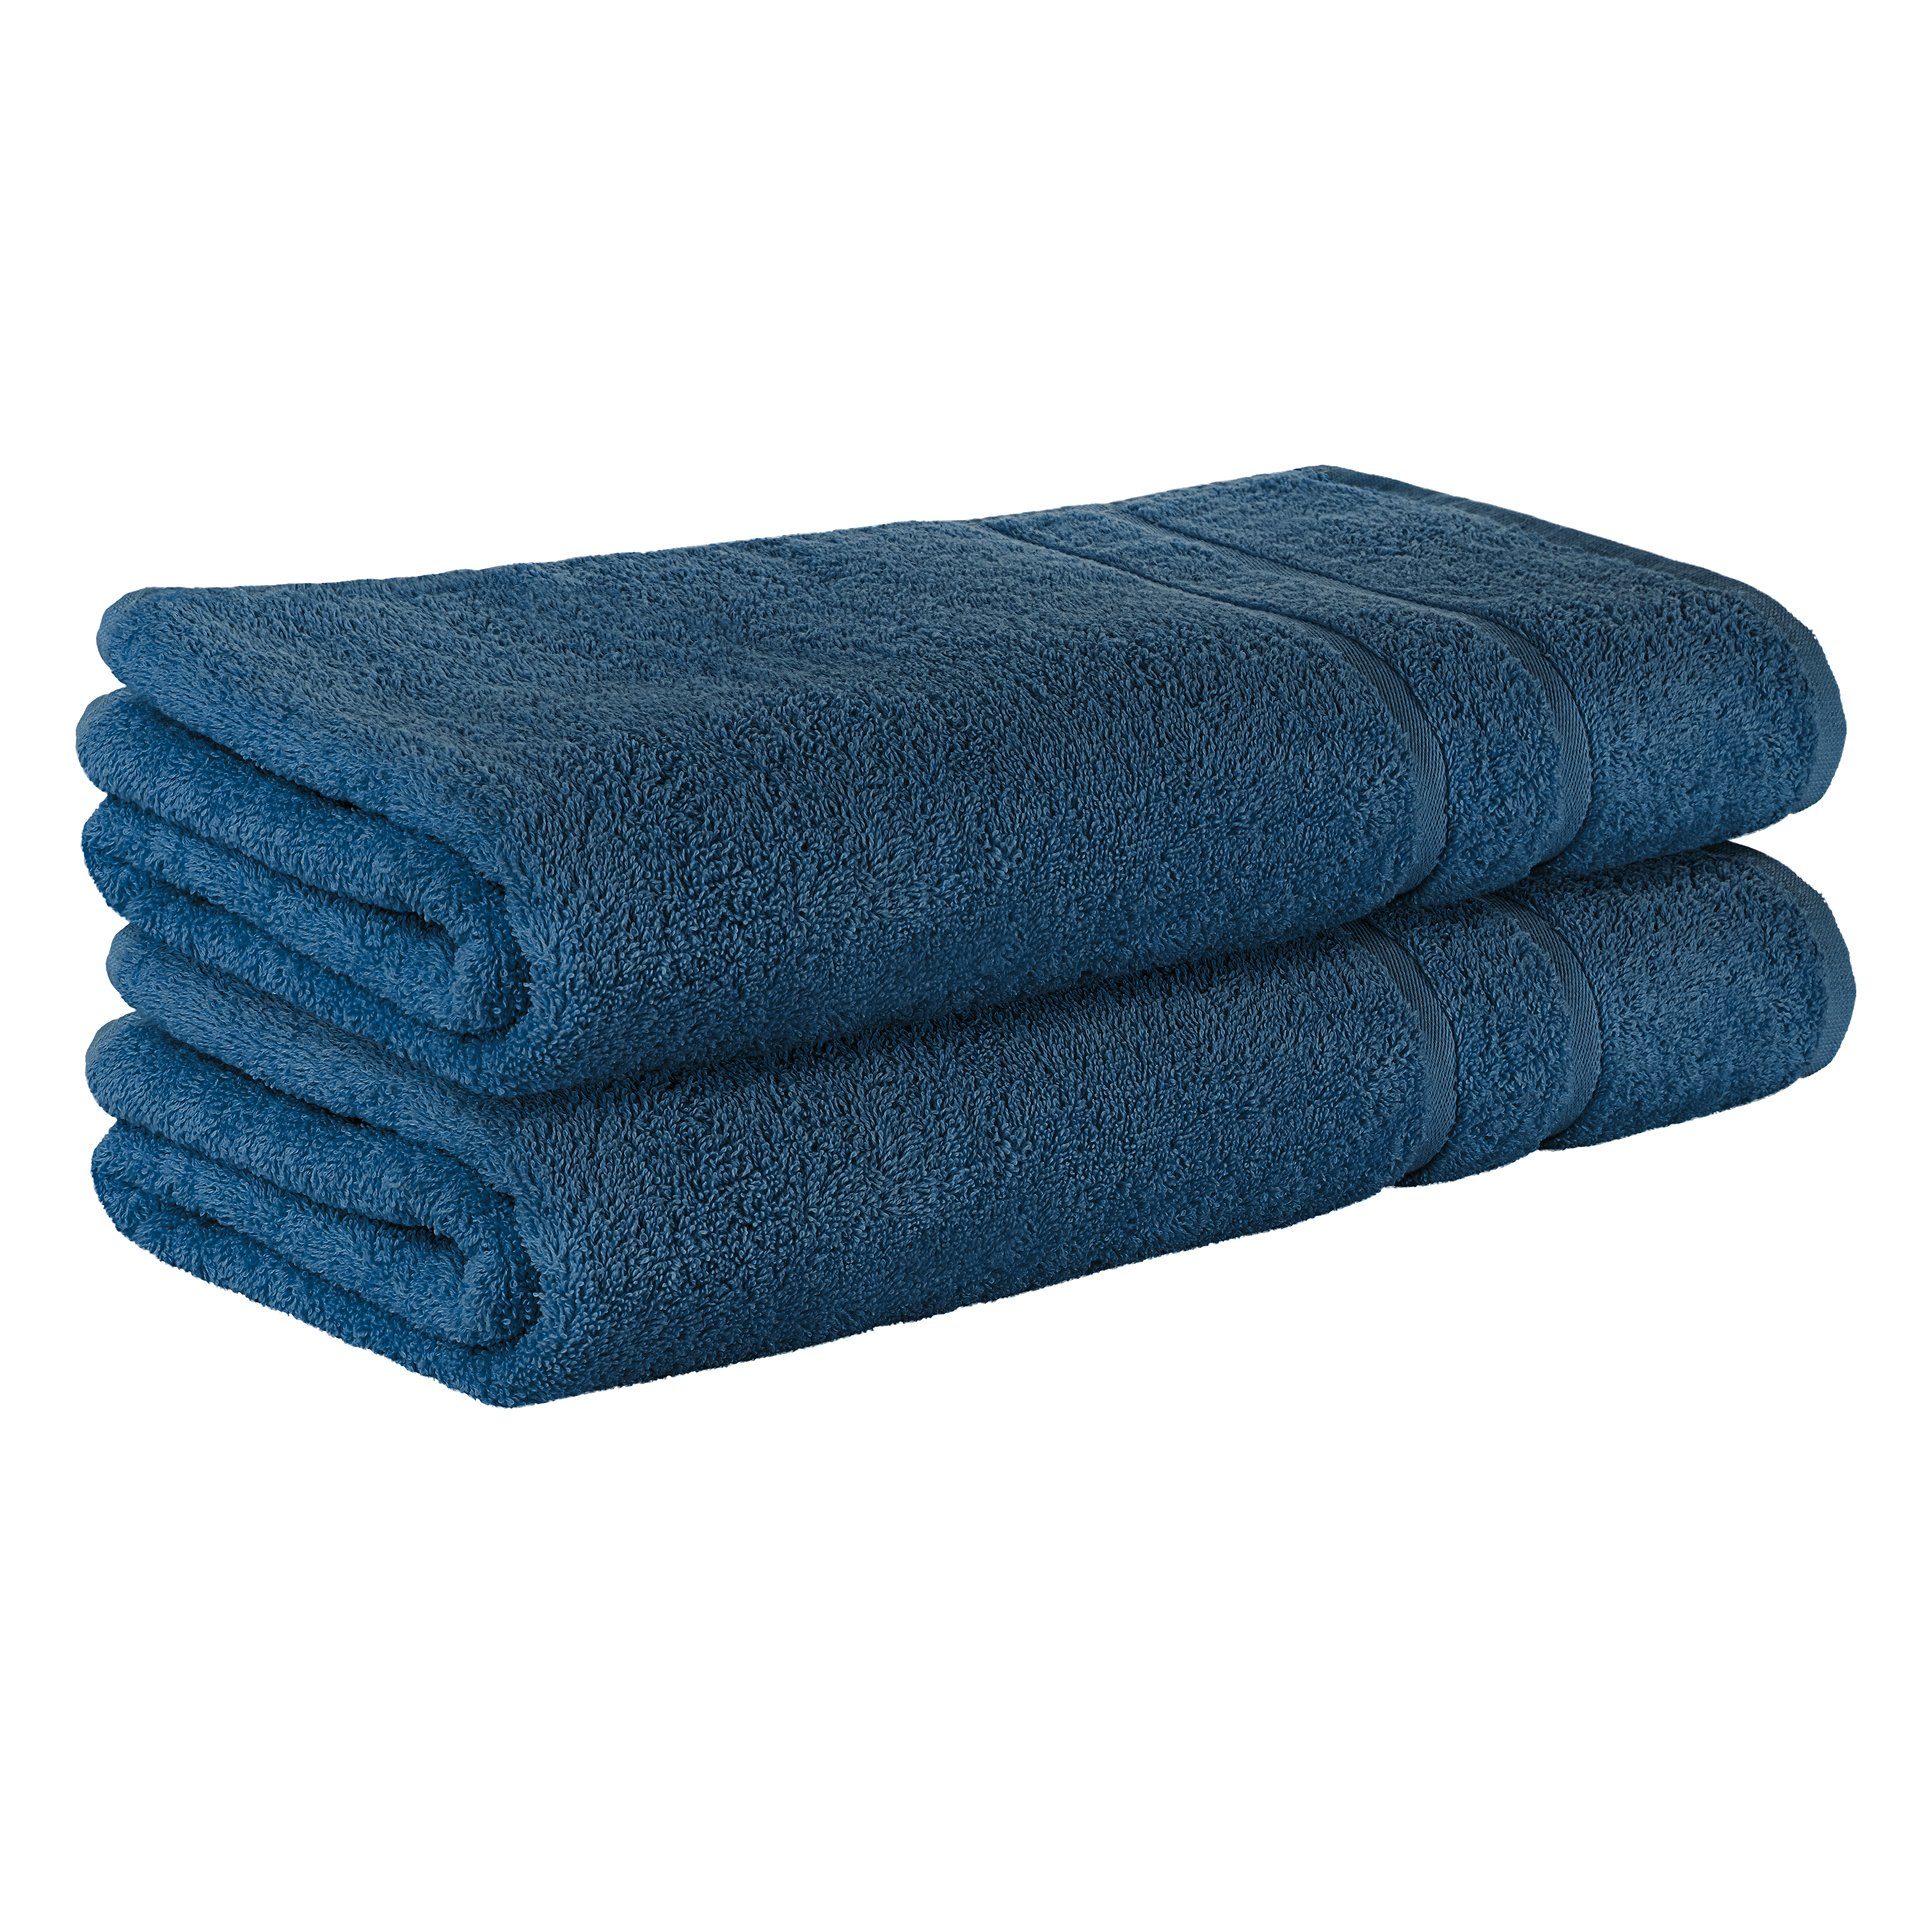 StickandShine Handtuch 2er Set Premium Frottee Handtuch 50x100 cm in 500g/m² aus 100% Baumwolle (2 Stück), 100% Baumwolle 500GSM Frottee Dunkelblau